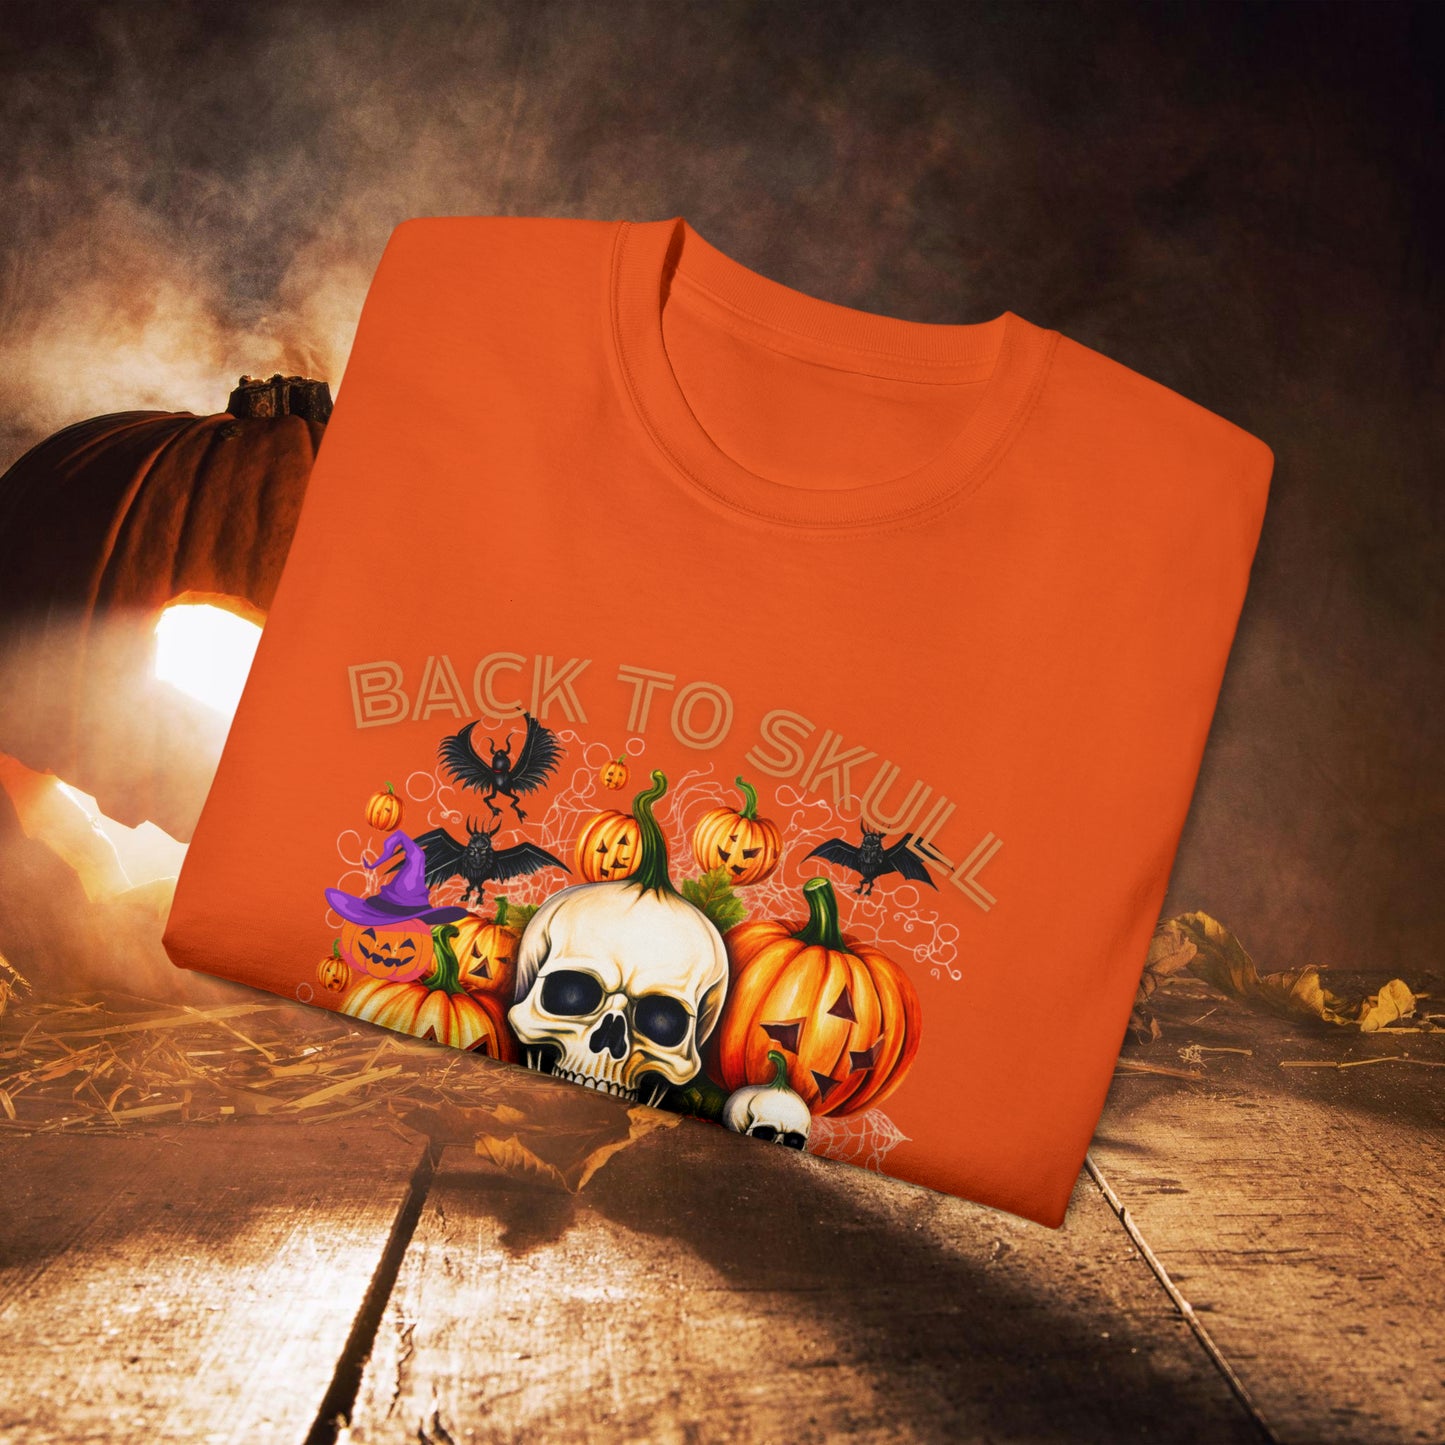 Back to Skull Halloween Tee | Back To Skull T-Shirt   